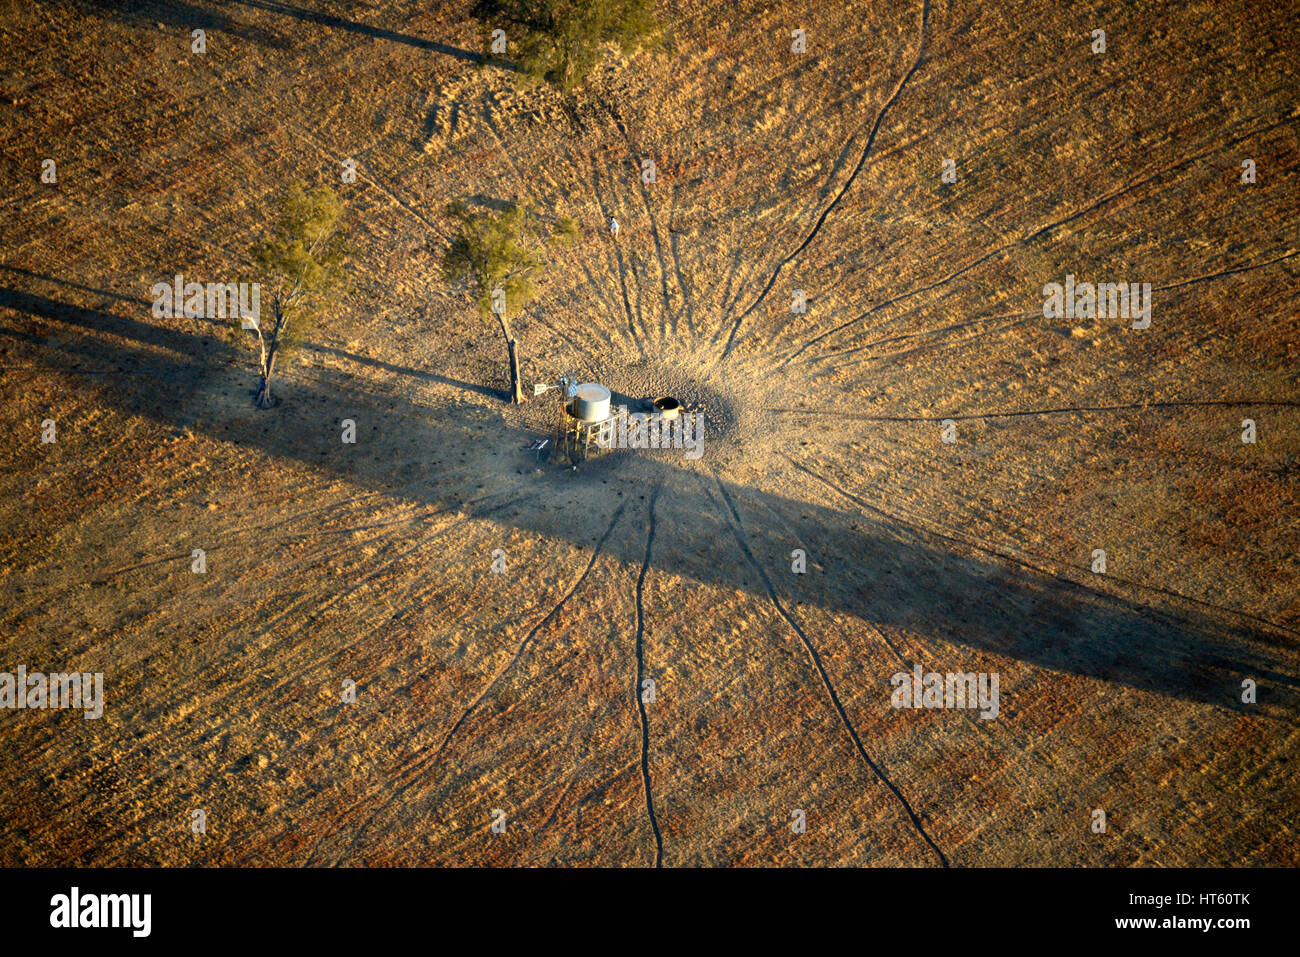 Vista aérea de huellas de animales que conduce a un abrevadero secos y lone animal, Australia Occidental Foto de stock